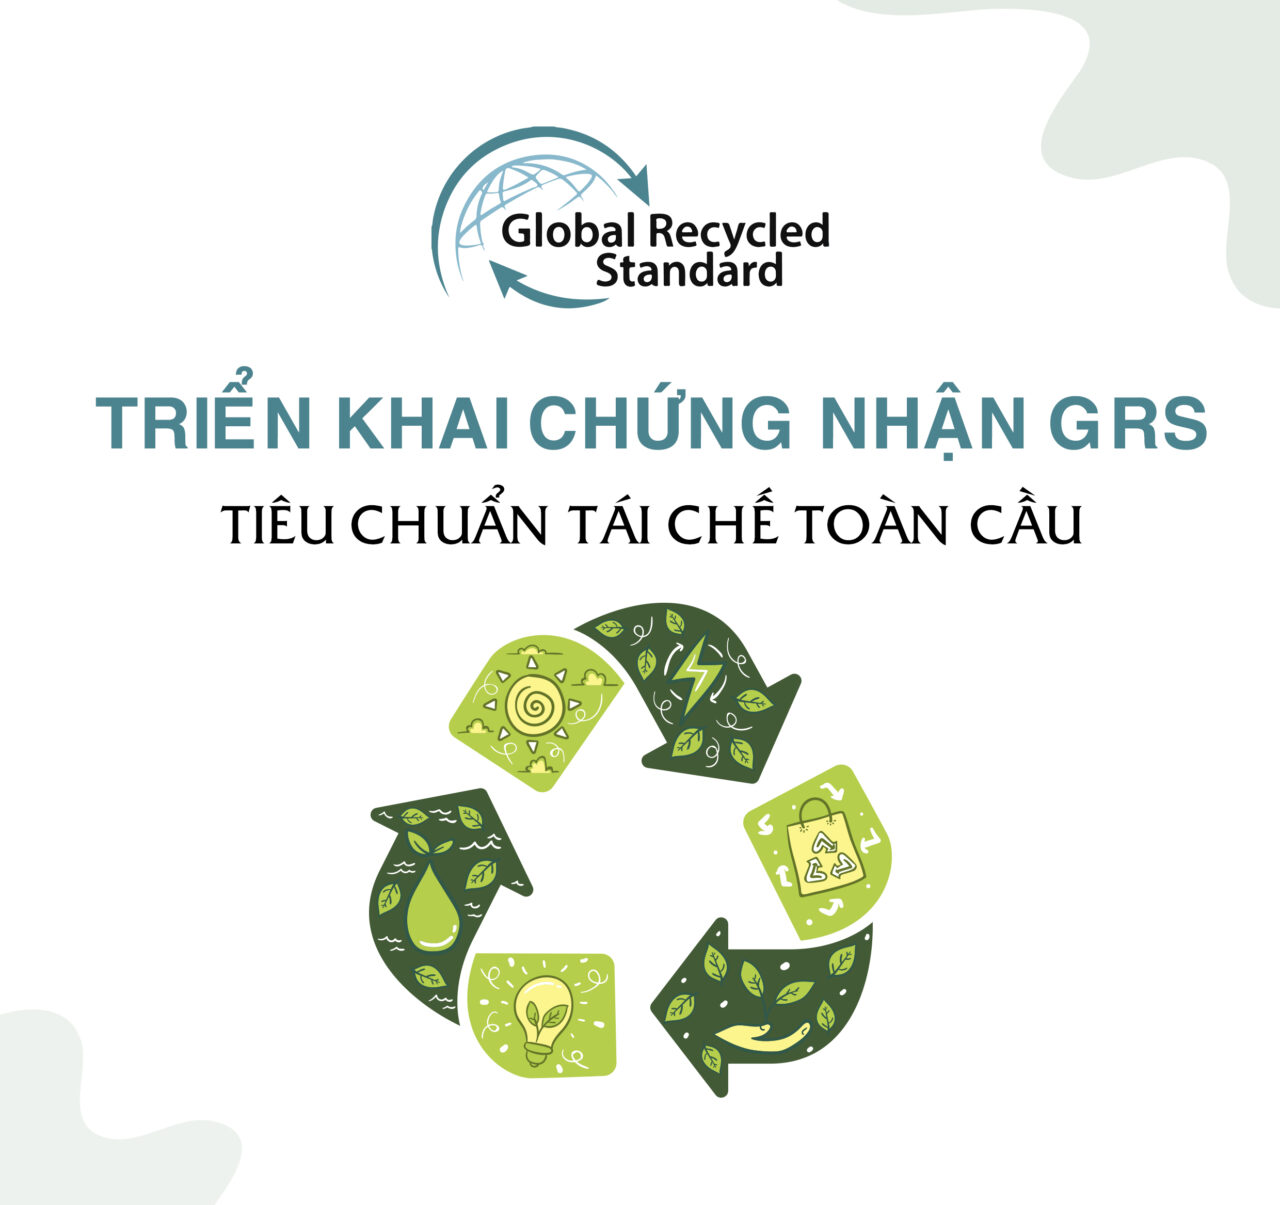 Chứng nhận GRS - Tiêu chuẩn tái chế toàn cầu - Gglobal